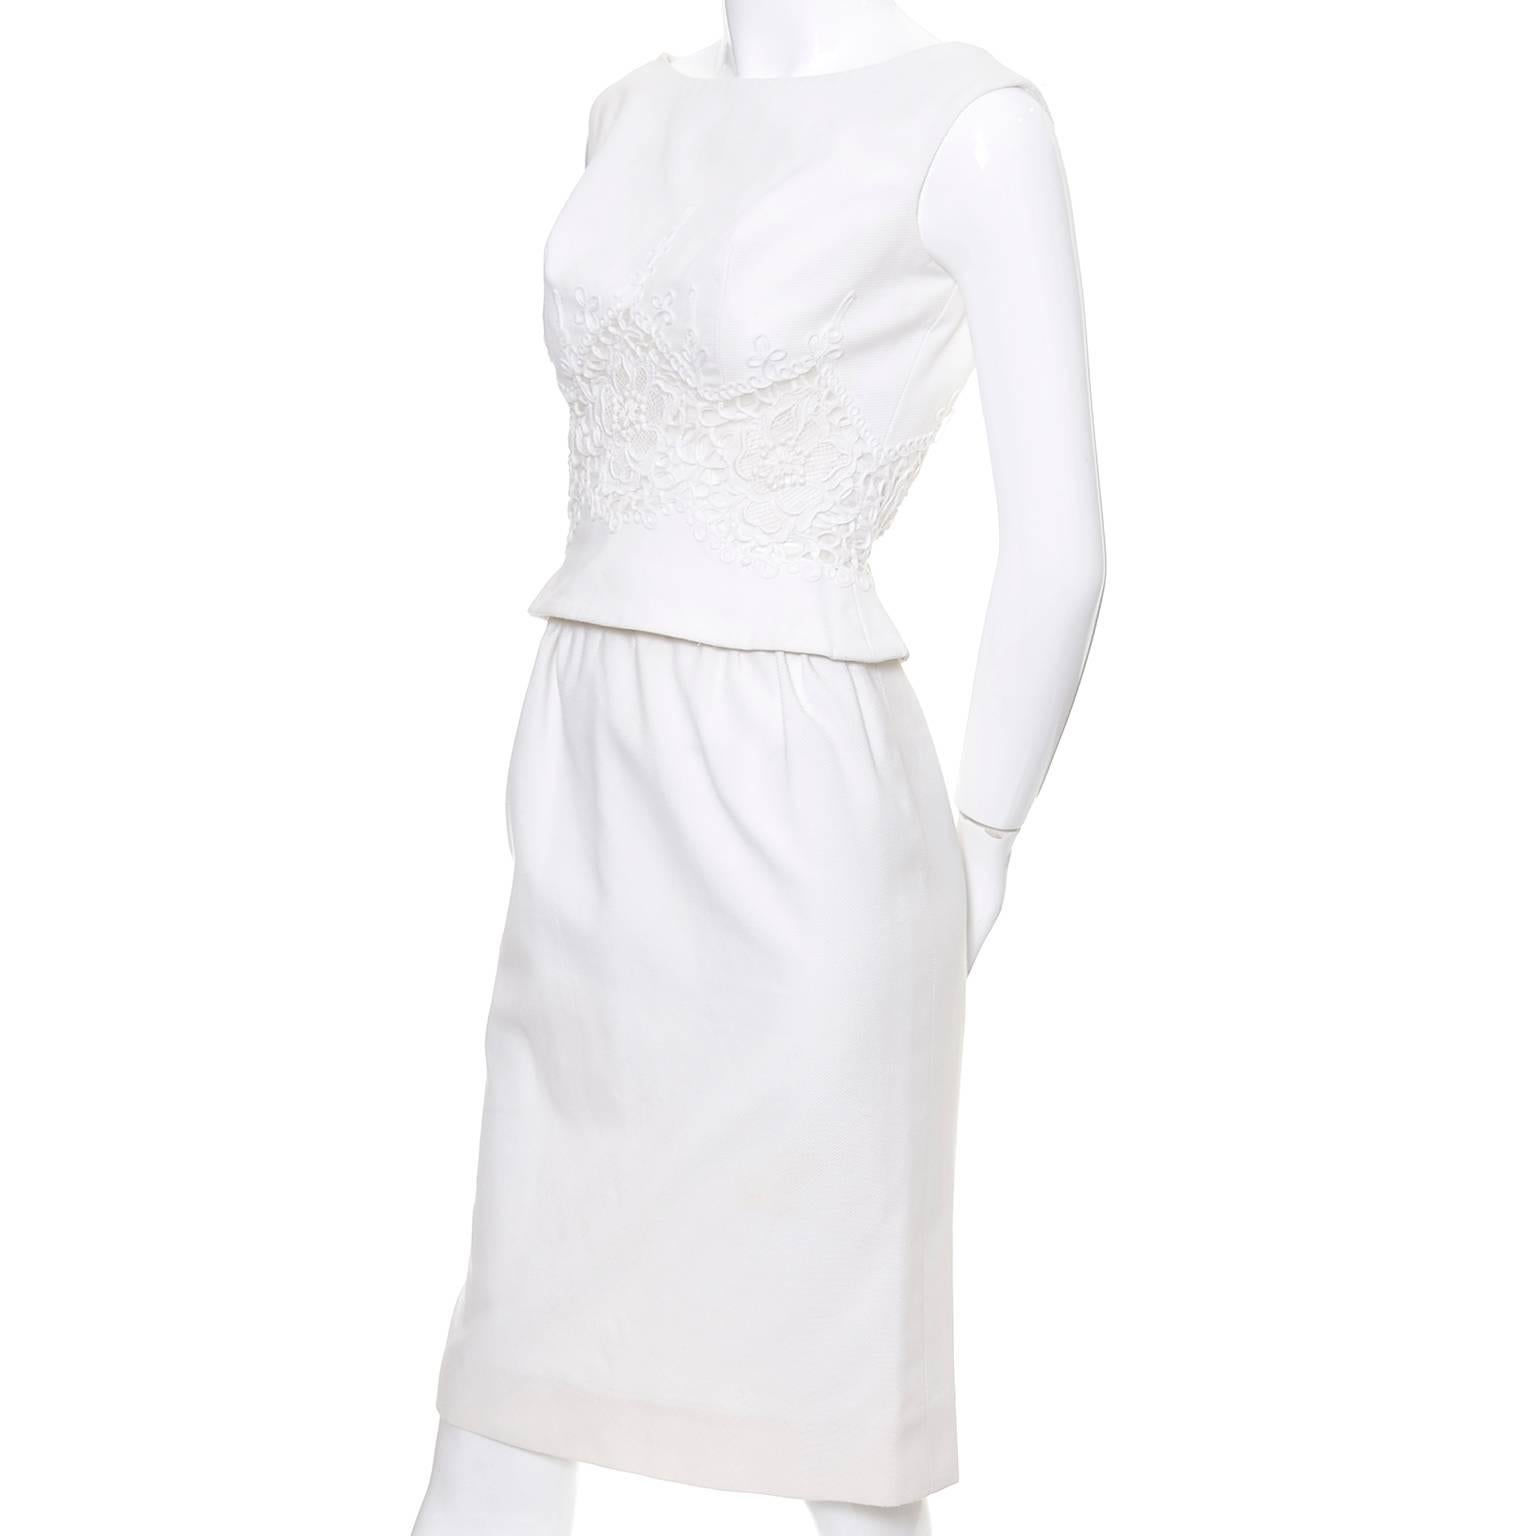 Gray Carlye White Pique Vintage Dress 2pc Lace Mesh Peek a Boo Peplum Bodice XS For Sale